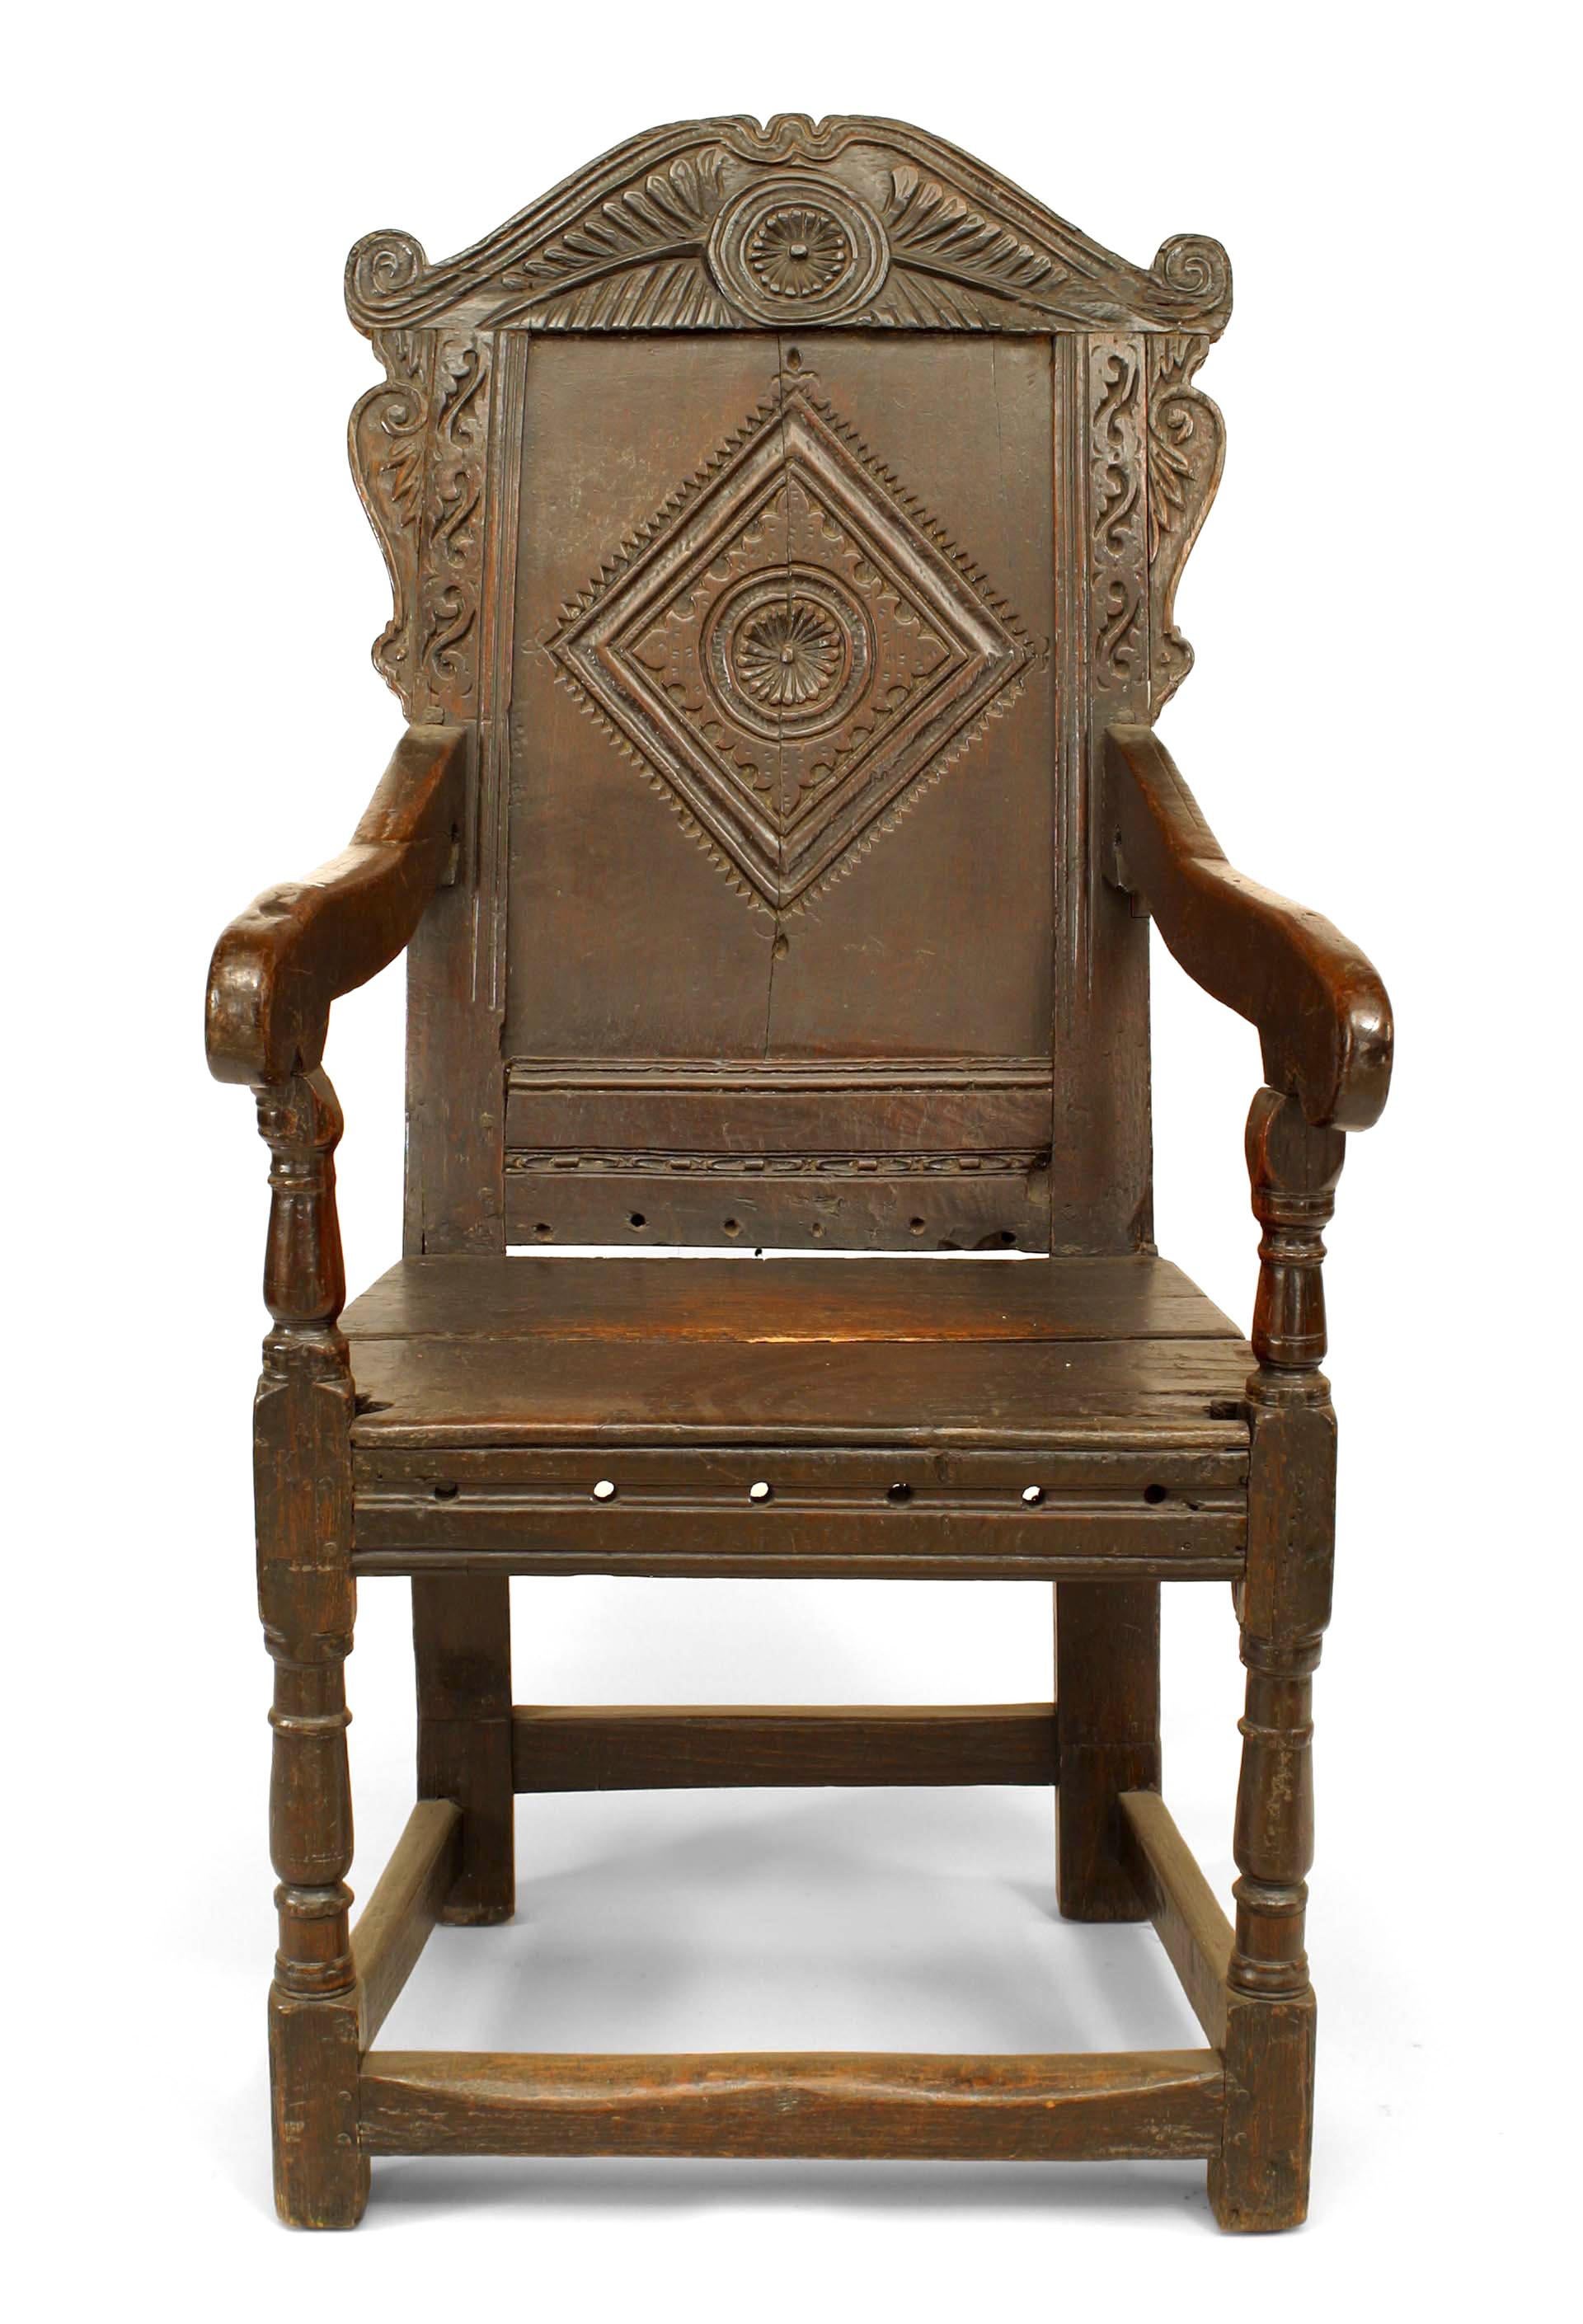 Englischer Renaissance (17. Jh.) Wainscot-Sessel aus Eichenholz mit rautenförmig geschnitzter Rückenlehne. (Paare nach hinten)
